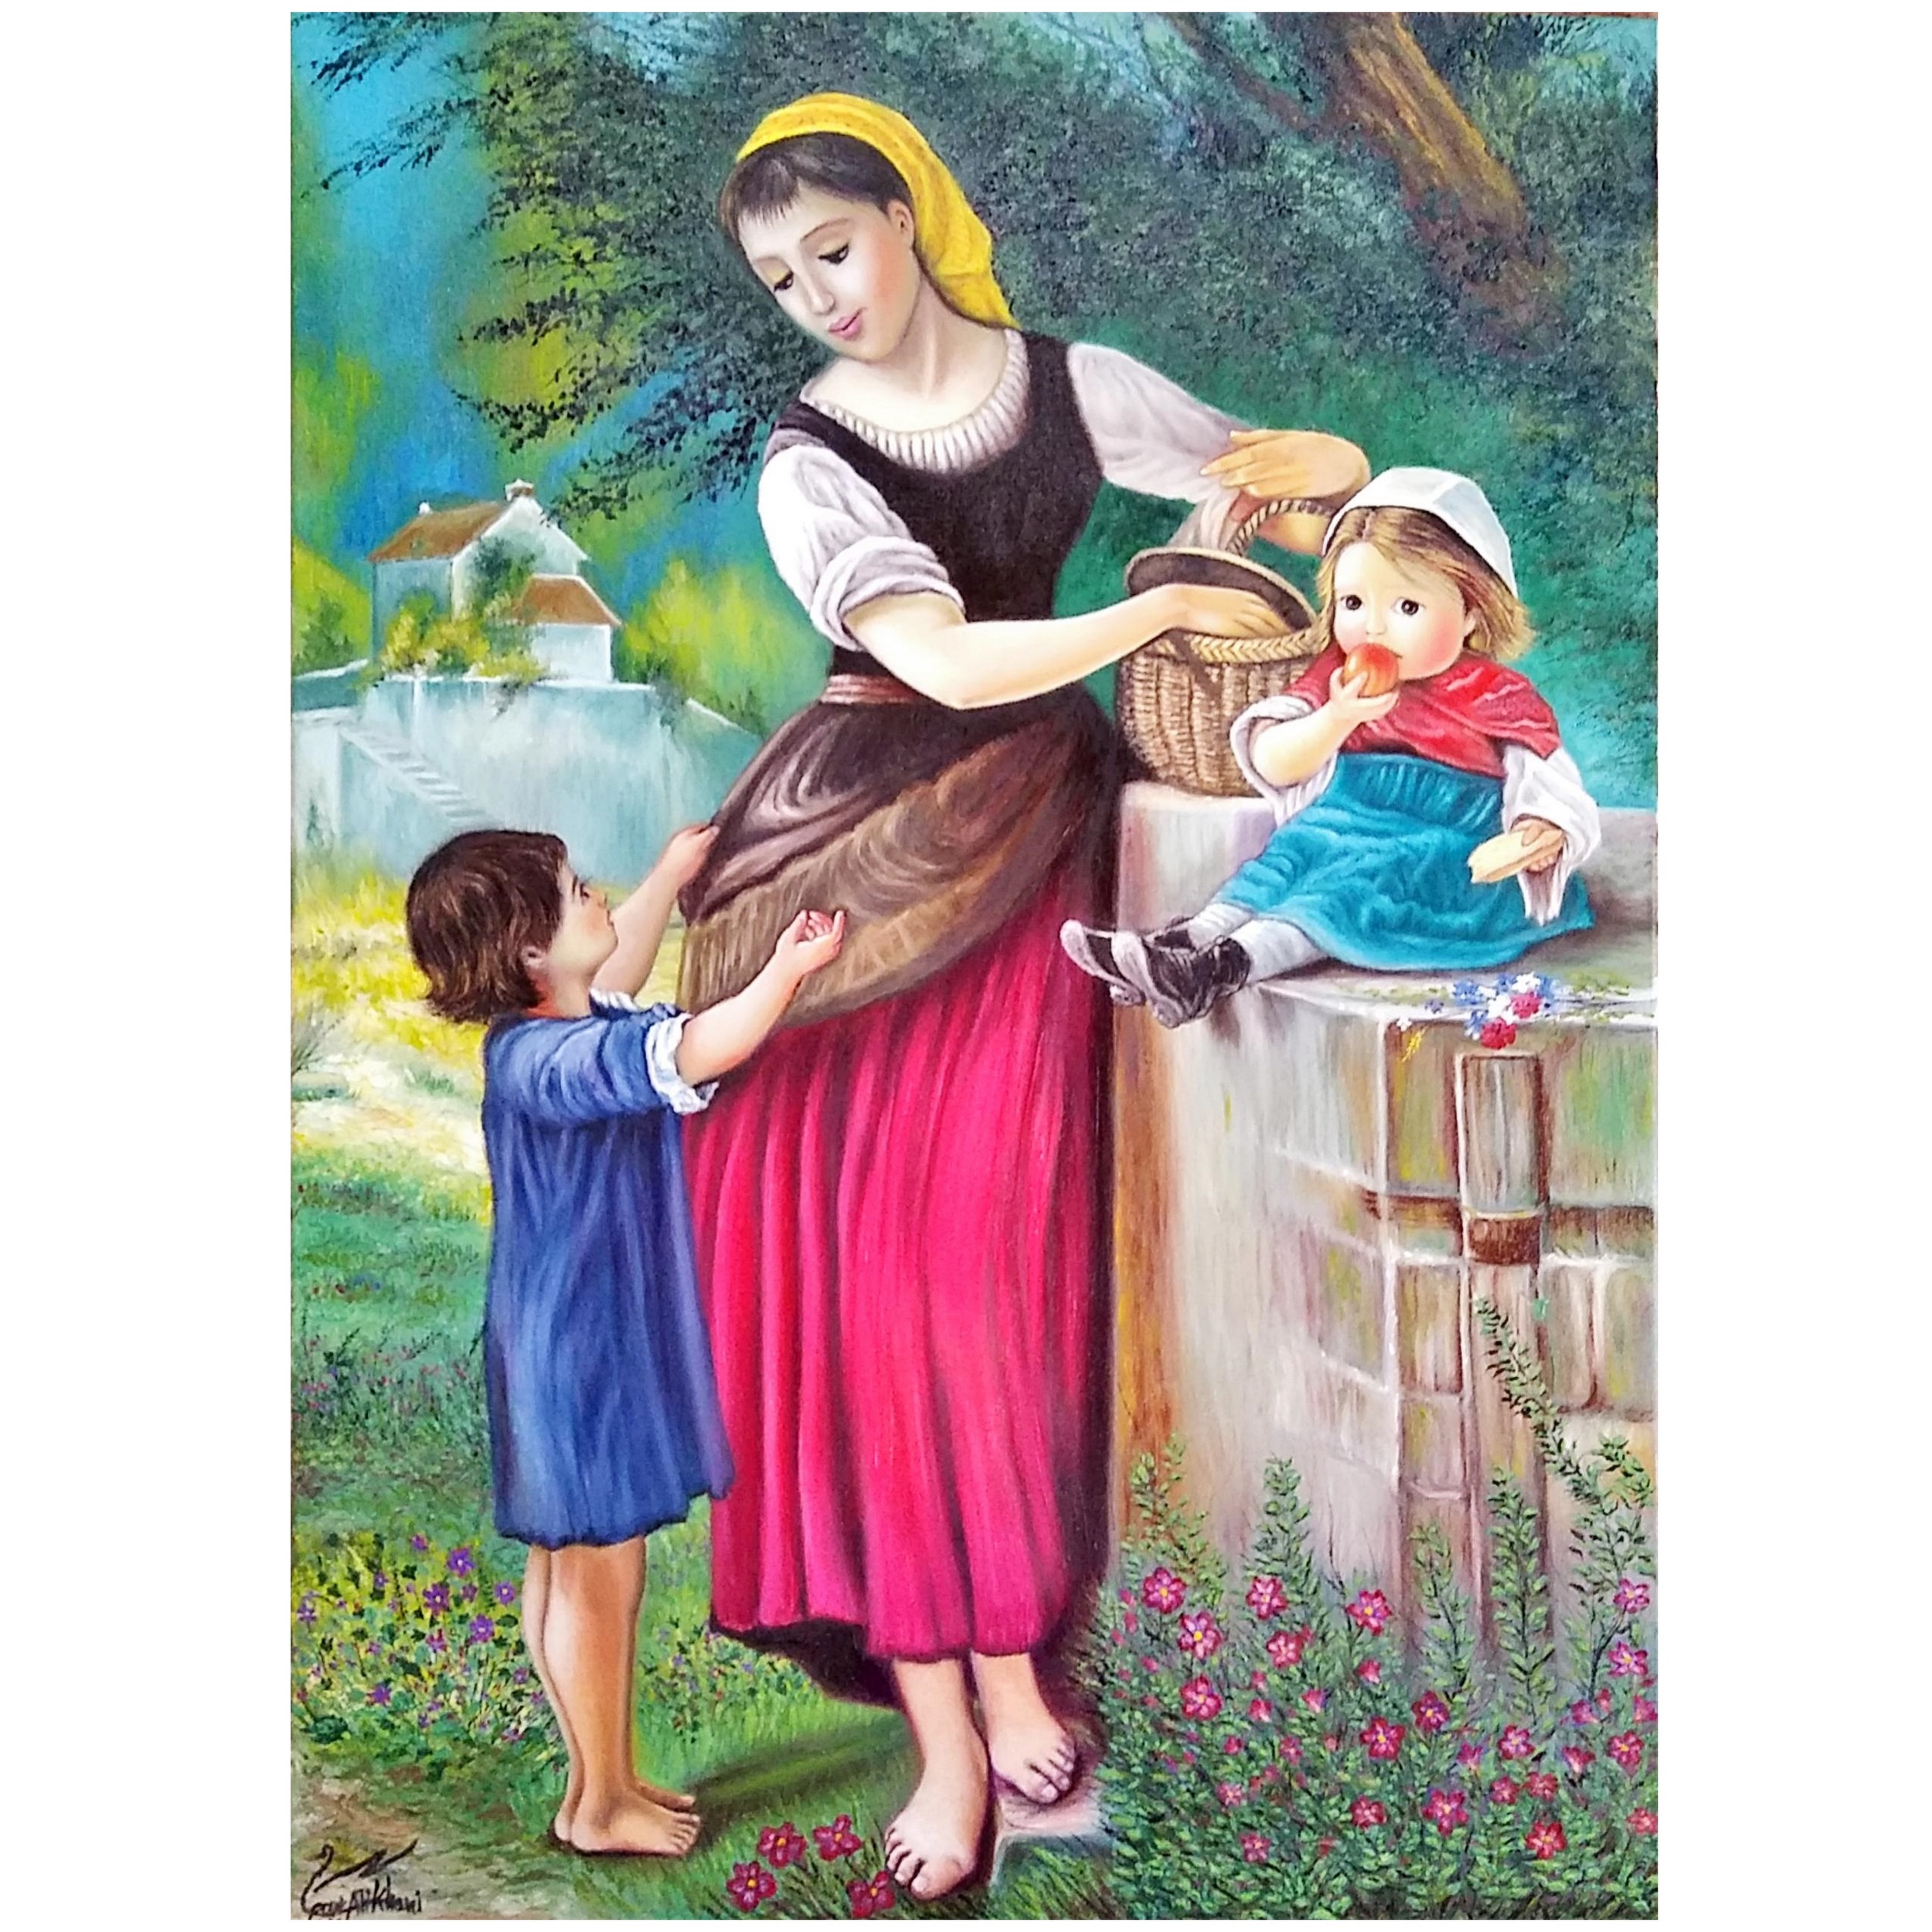 تابلو نقاشی رنگ روغن طرح مهر مادری کد 4024